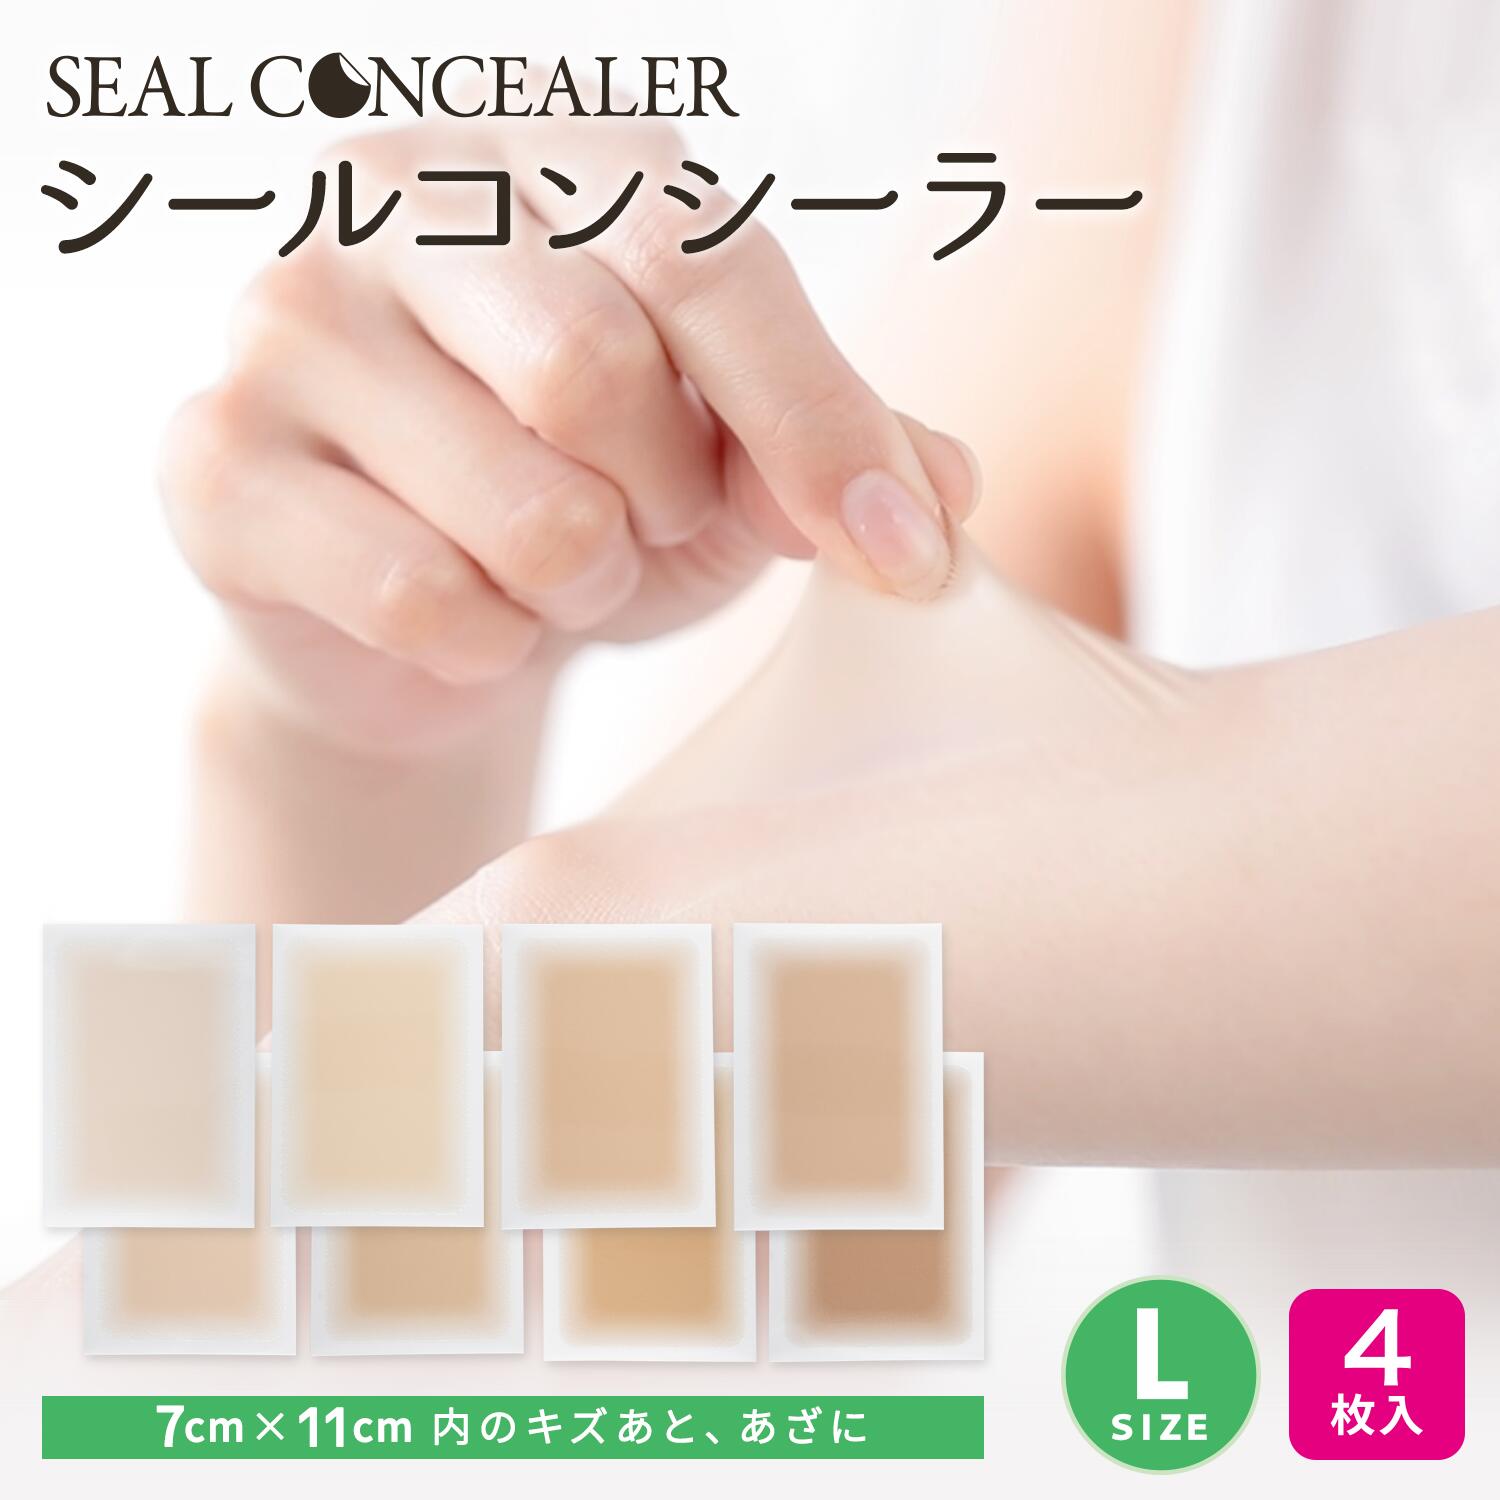 シールコンシーラー Lサイズ 4枚セット 日本製 自然にカバー  貼るだけ 極薄0.015　テカらない 目立たない 汗水に強い 肌色シール 貼りっぱなしOK 肌に負担が少ないタイプ 手術あと リスカ アムカ レグカ